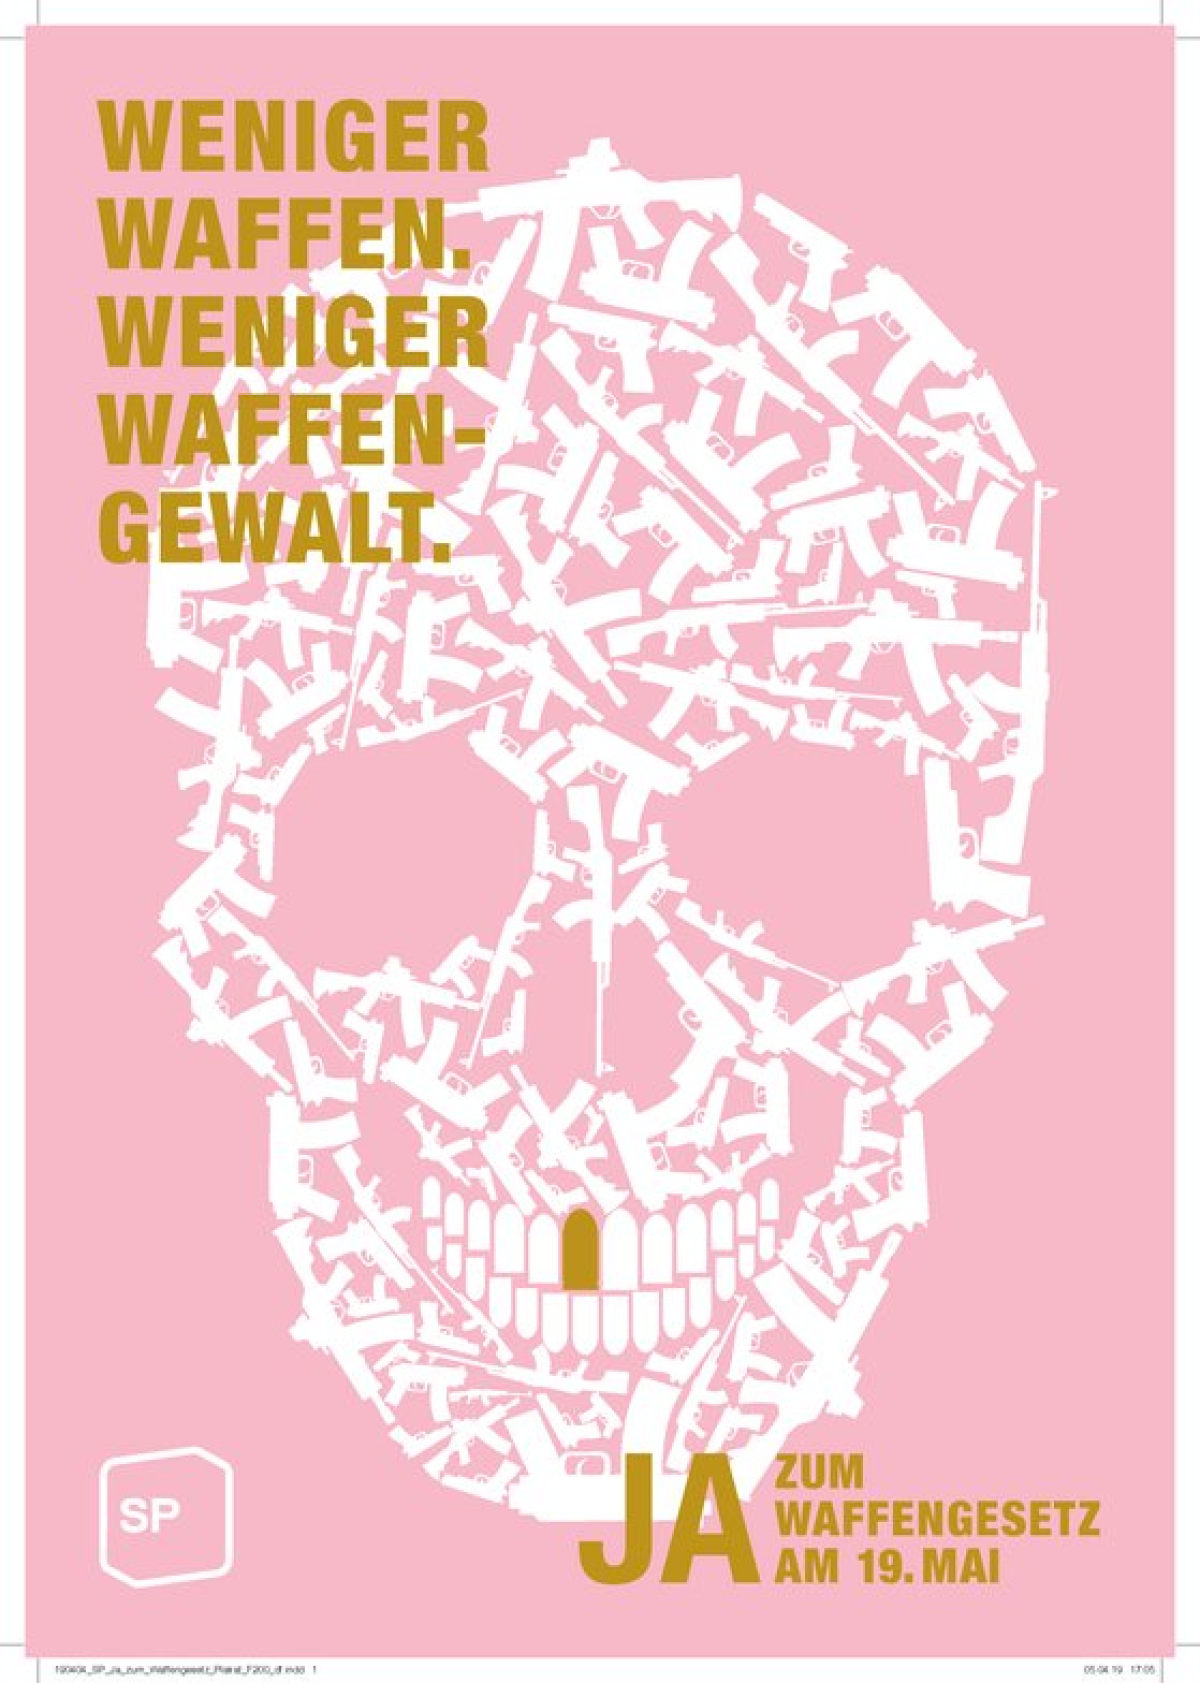 2019년 5월 19일 실시된 ‘무기법’강화 관련 스위스 국민투표 포스터. 포스터에 ‘더 적은 총기, 더 적은 총기 범죄’라고 쓰여 있다.